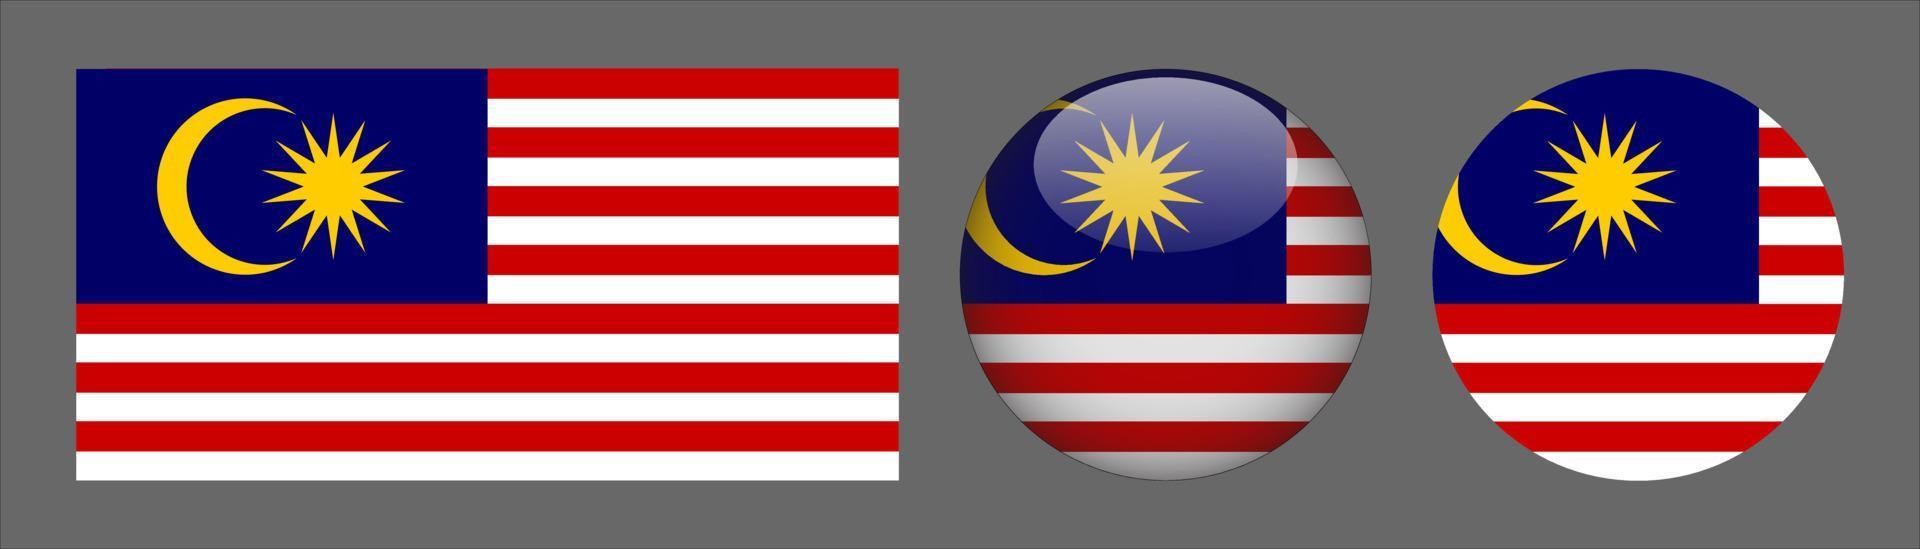 bandera de malasia set colección, relación de tamaño original, 3d redondeado y redondeado plano. vector